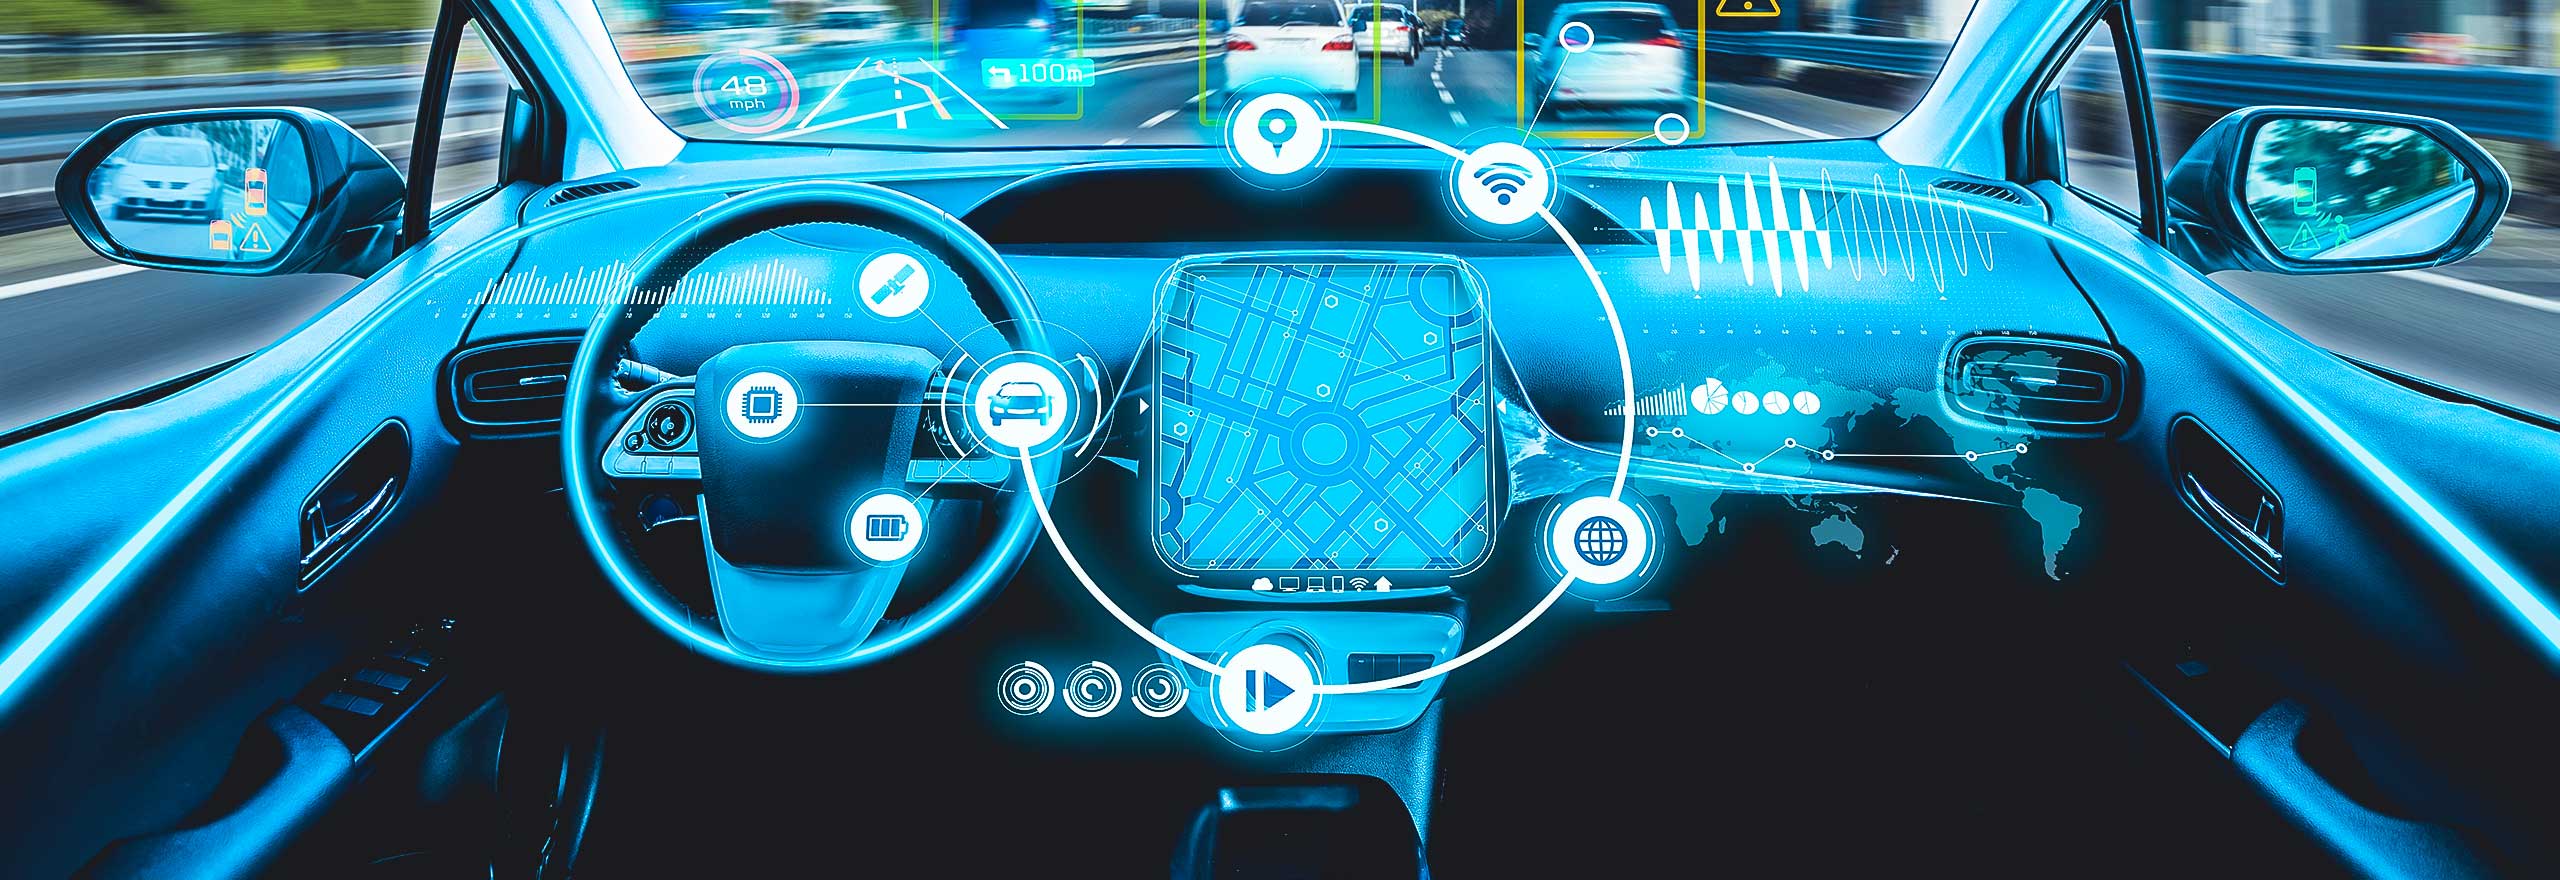 Cockpit eines futuristischen selbstfahrenden Autos mit grafischen Overlays, die Fahrtdaten anzeigen 